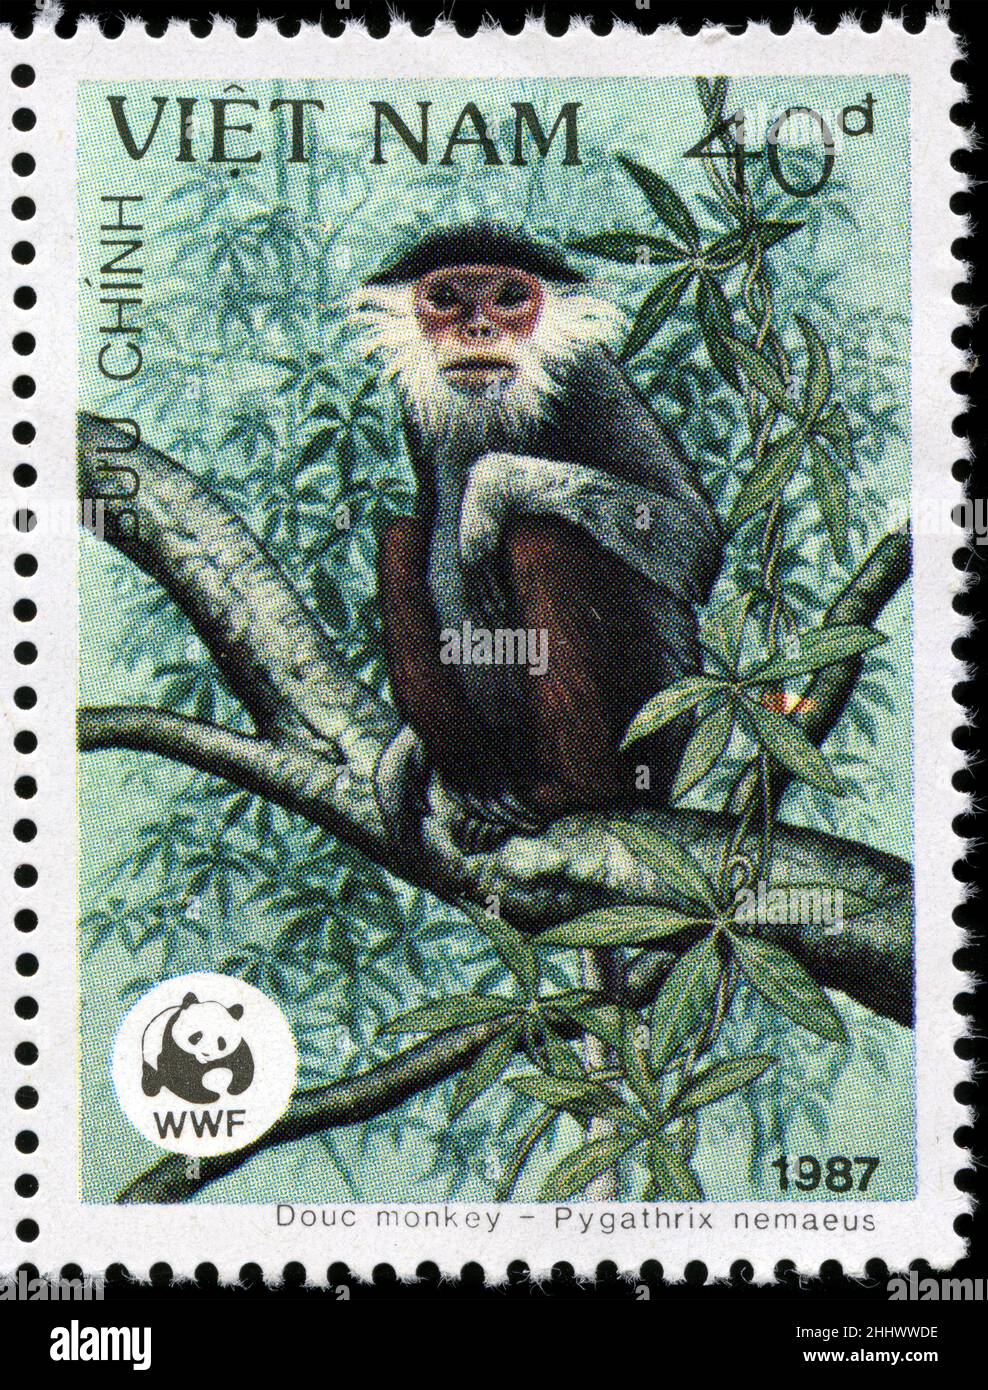 Francobollo del Vietnam nella serie World Wildlife Fund pubblicata nel 1987 Foto Stock